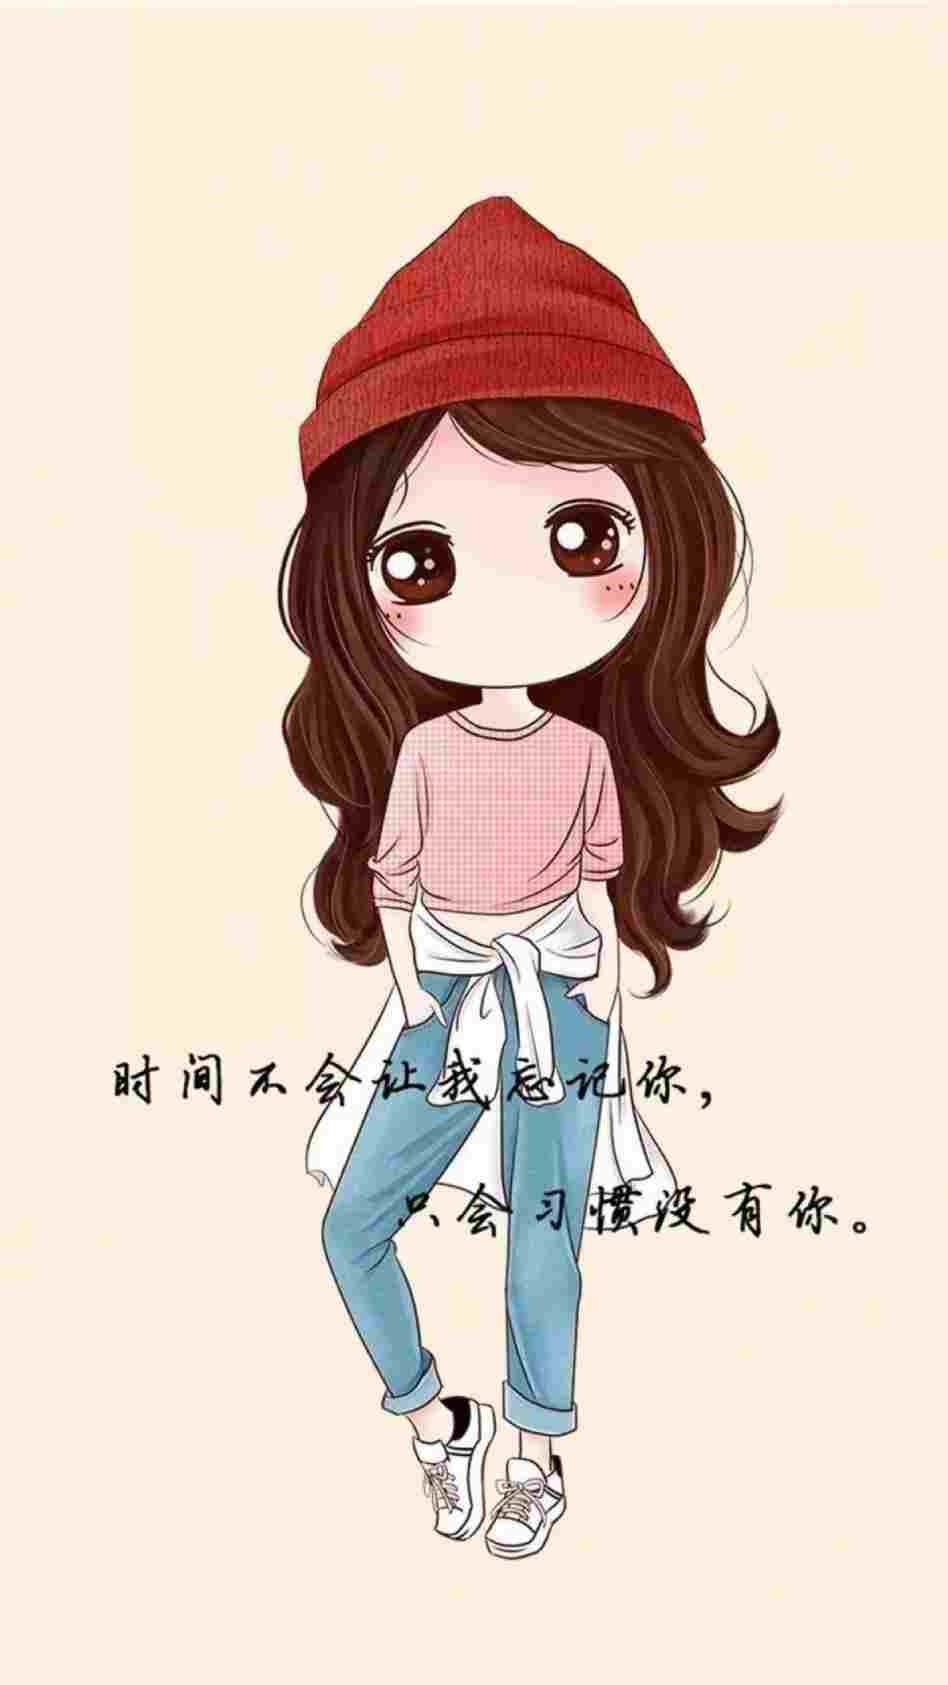 Cute Cartoon Korean Girl Pfp - Top 20 Cute Cartoon Korean Girl Pfp, Avatar,  Dp, icon [ HQ ]